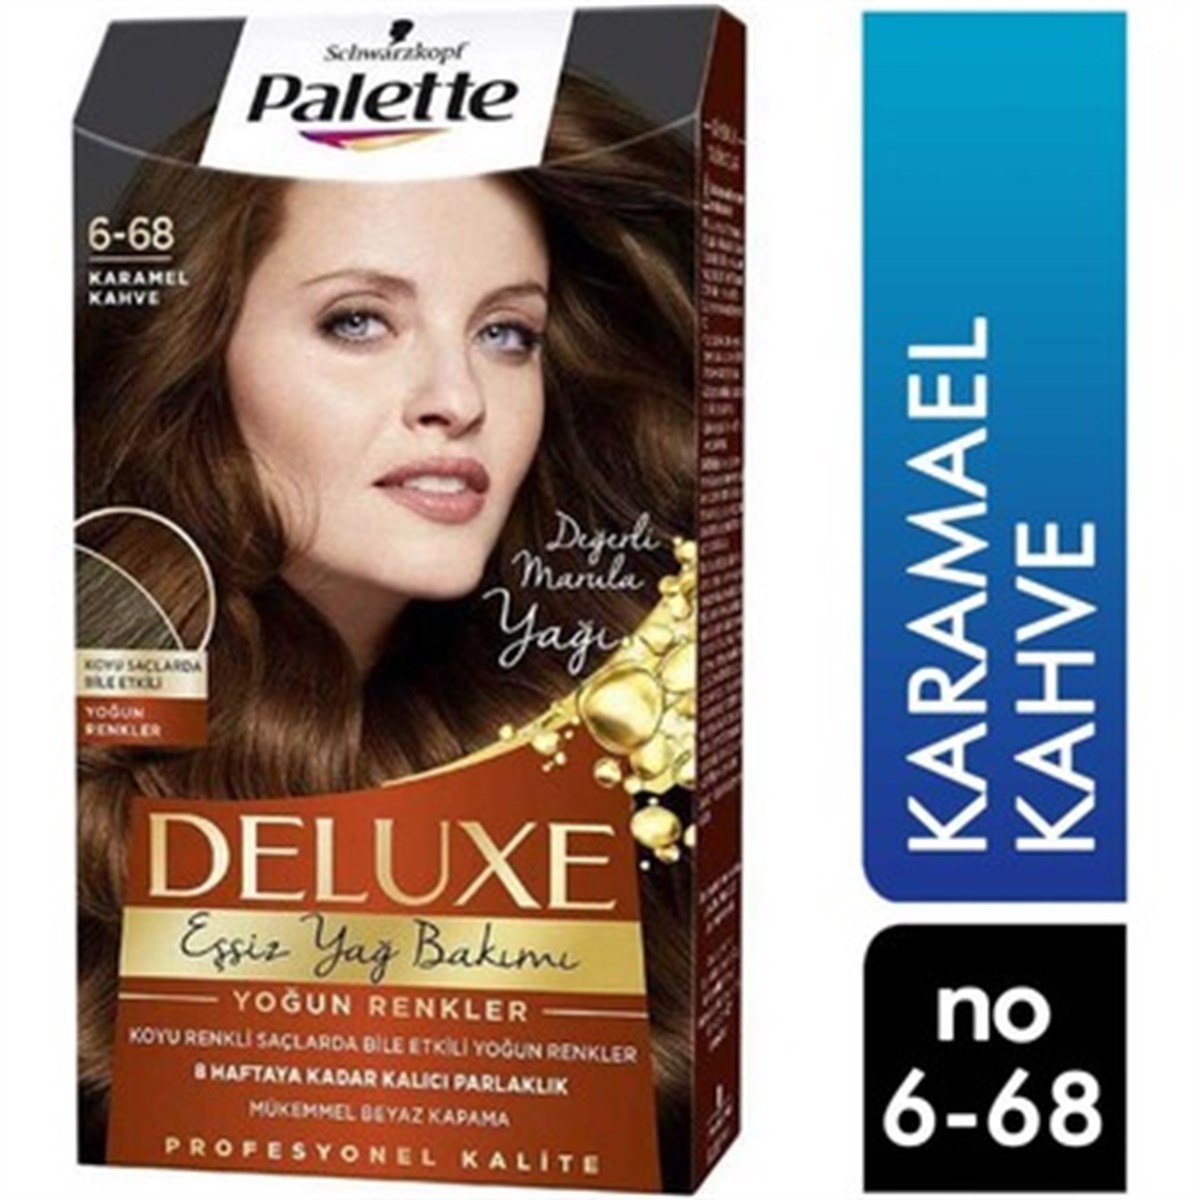 Palette Deluxe Eşsiz Yağ Bakımı Saç Boyası Karamel Kahve 6 68 | Farma Ucuz